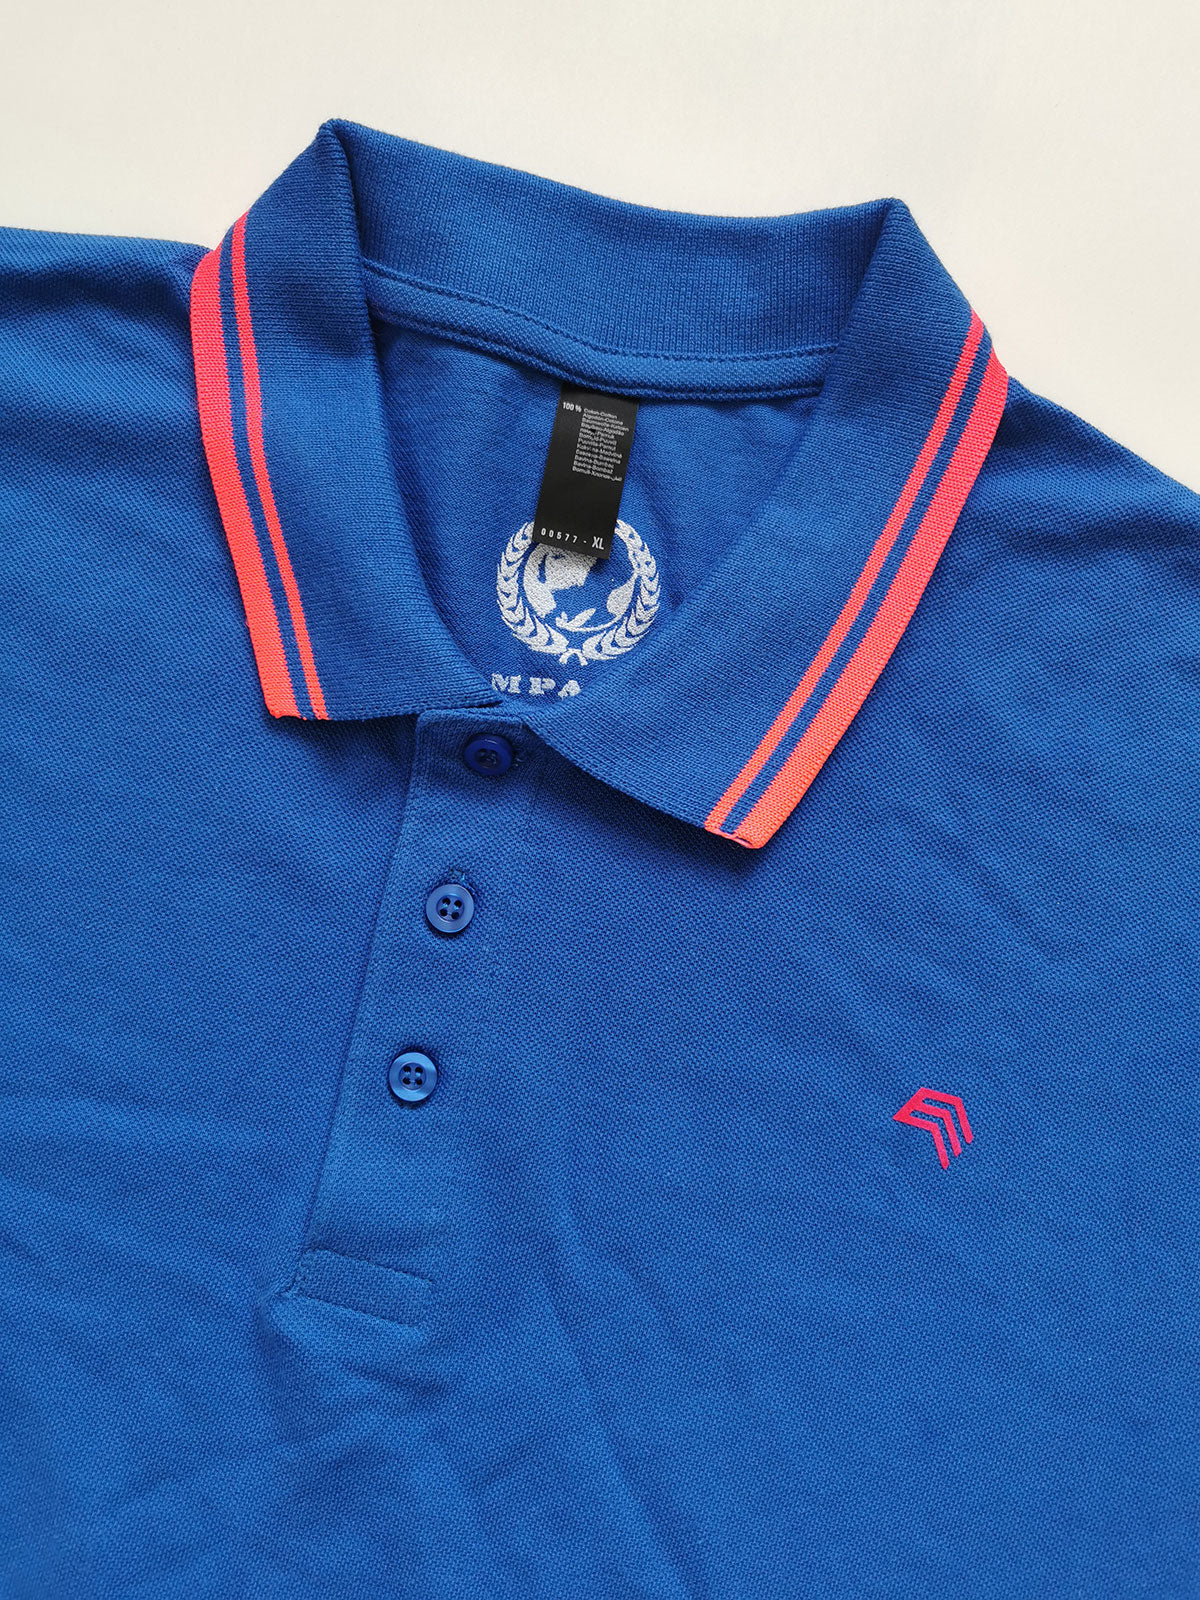 ― % ― SLS 0577/10A ― Kontraststreifen Polo Shirt - Royal Blau / Neon Coral [XL / 2XL]